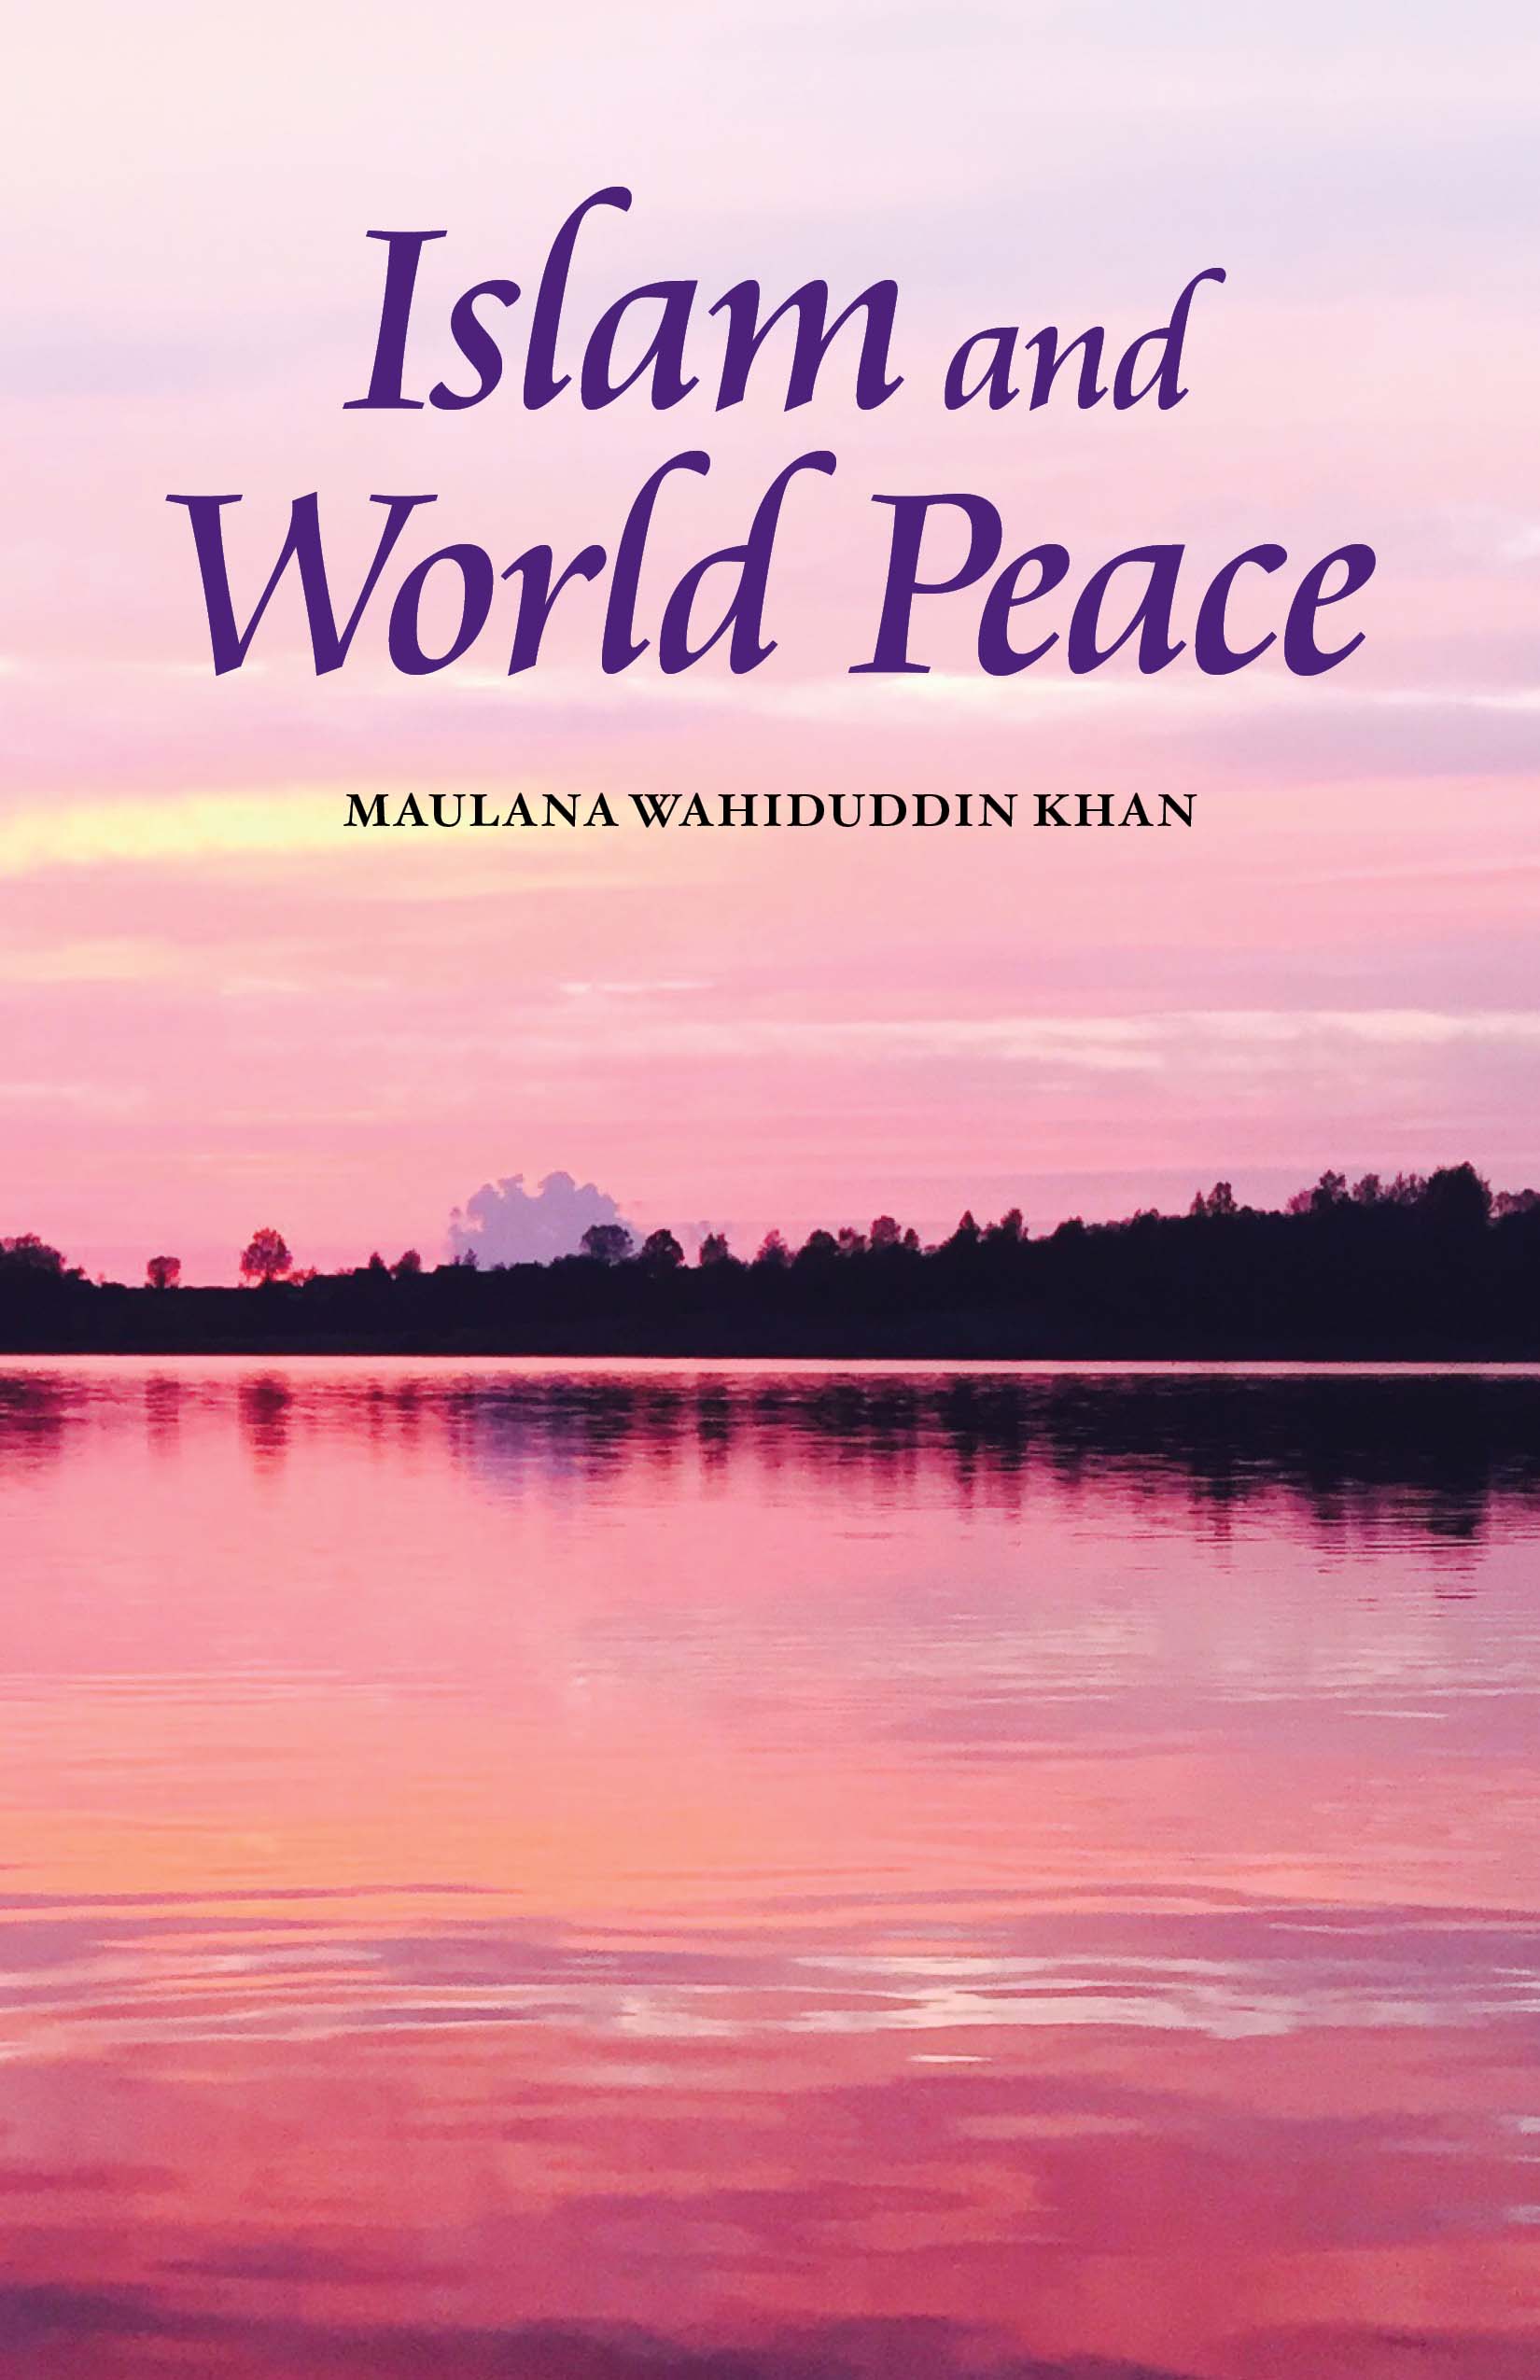 ISLAM AND WORLD PEACE